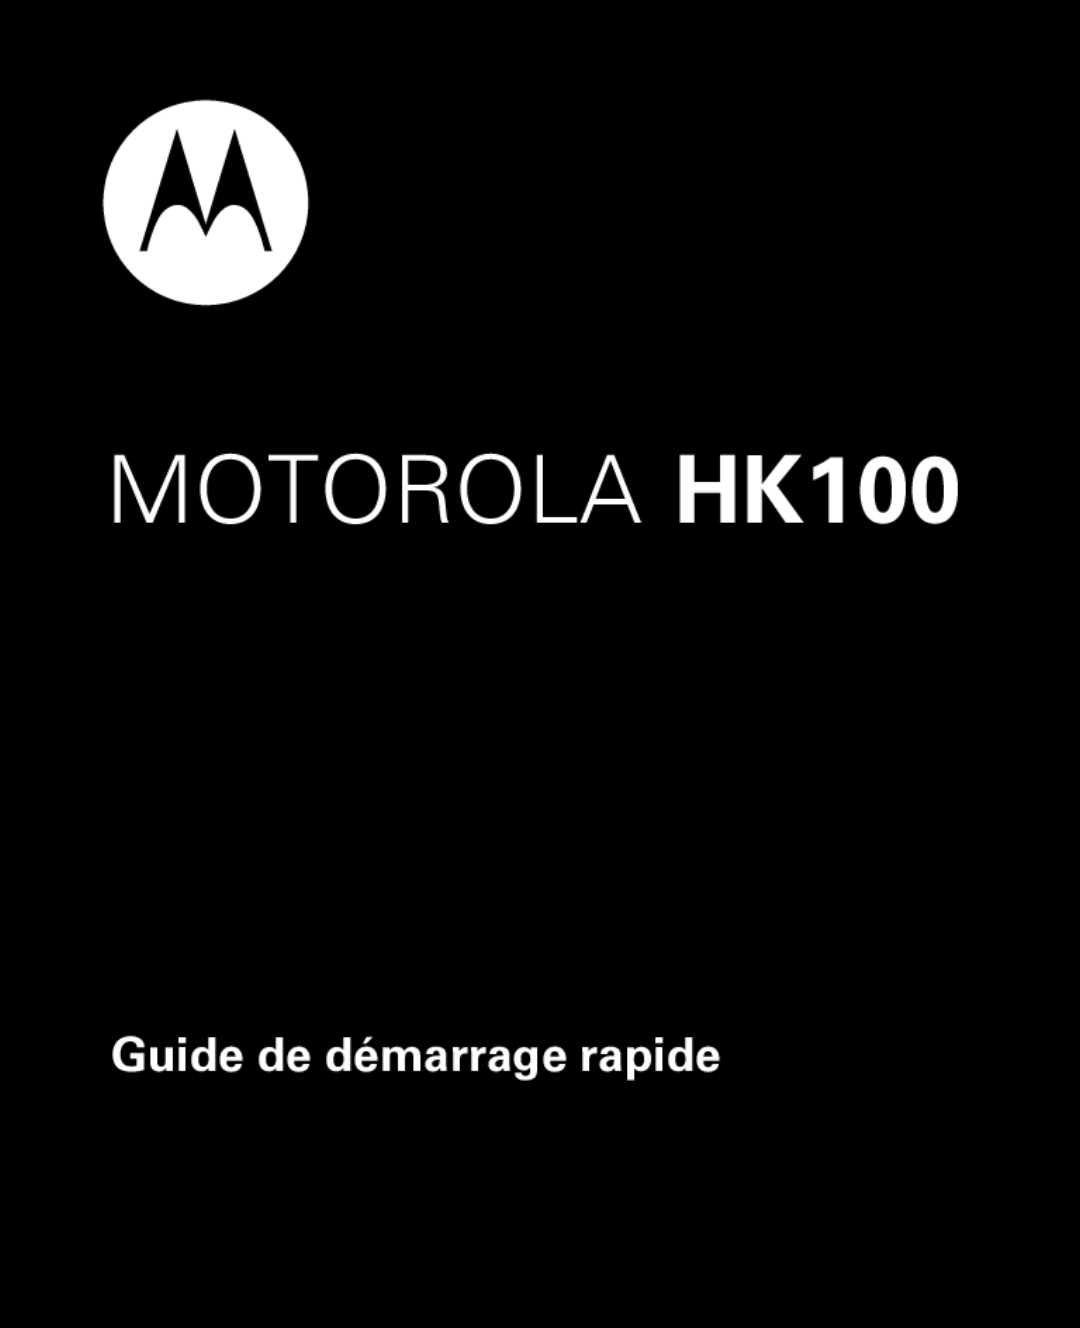 Motorola quick start Guide de démarrage rapide, MOTOROLA HK100 